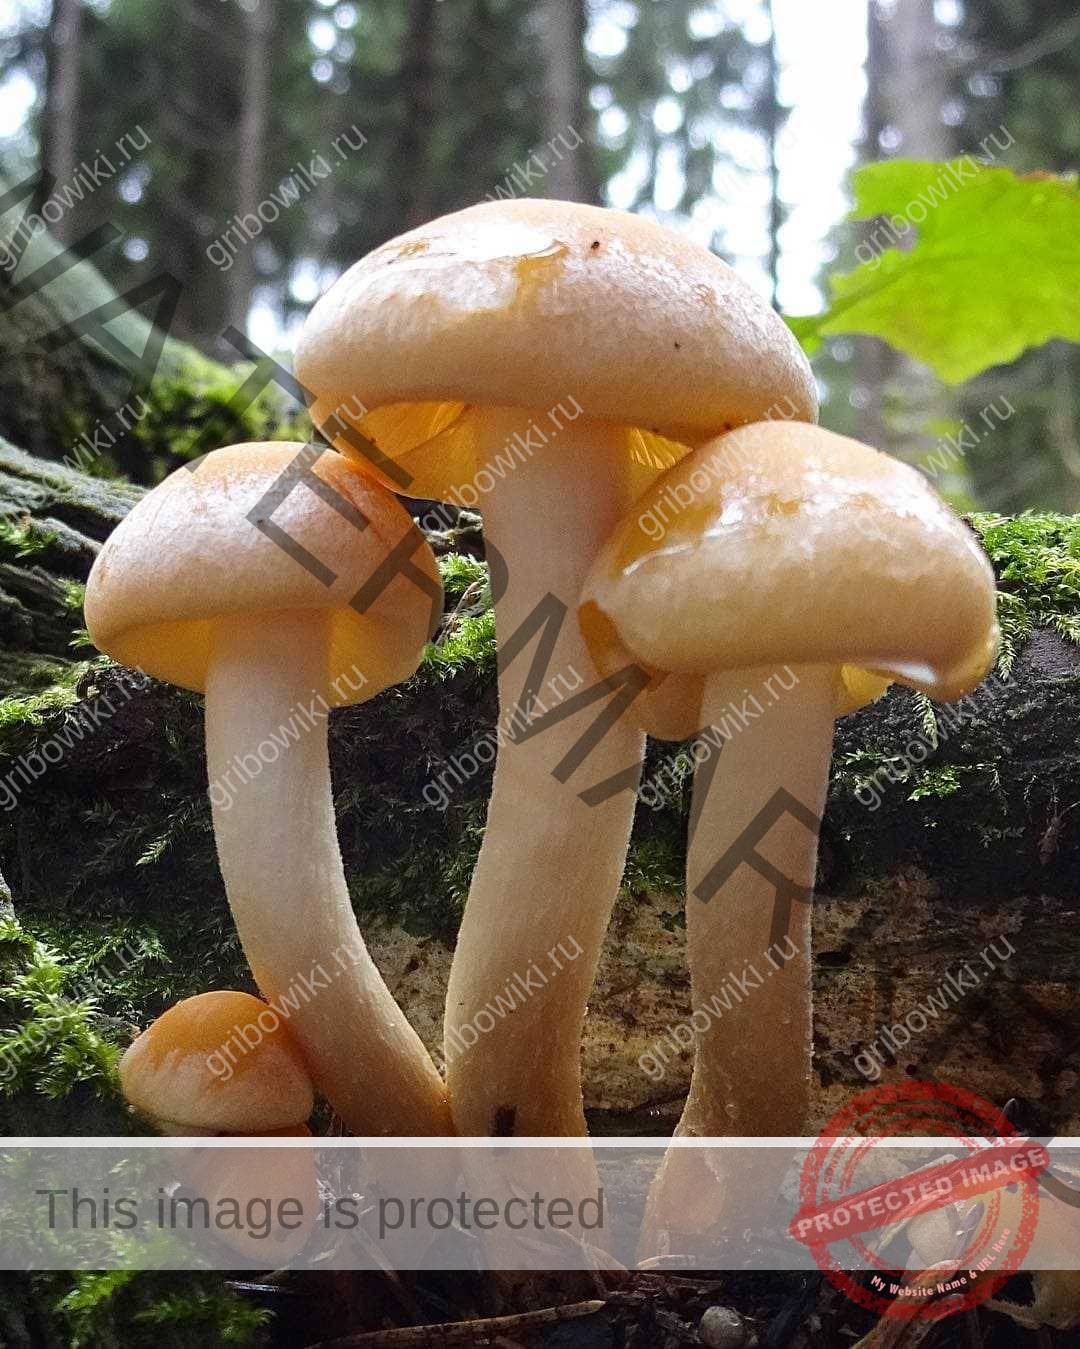 Cъедобный и очень вкусный гриб — опенок серопластинчатый